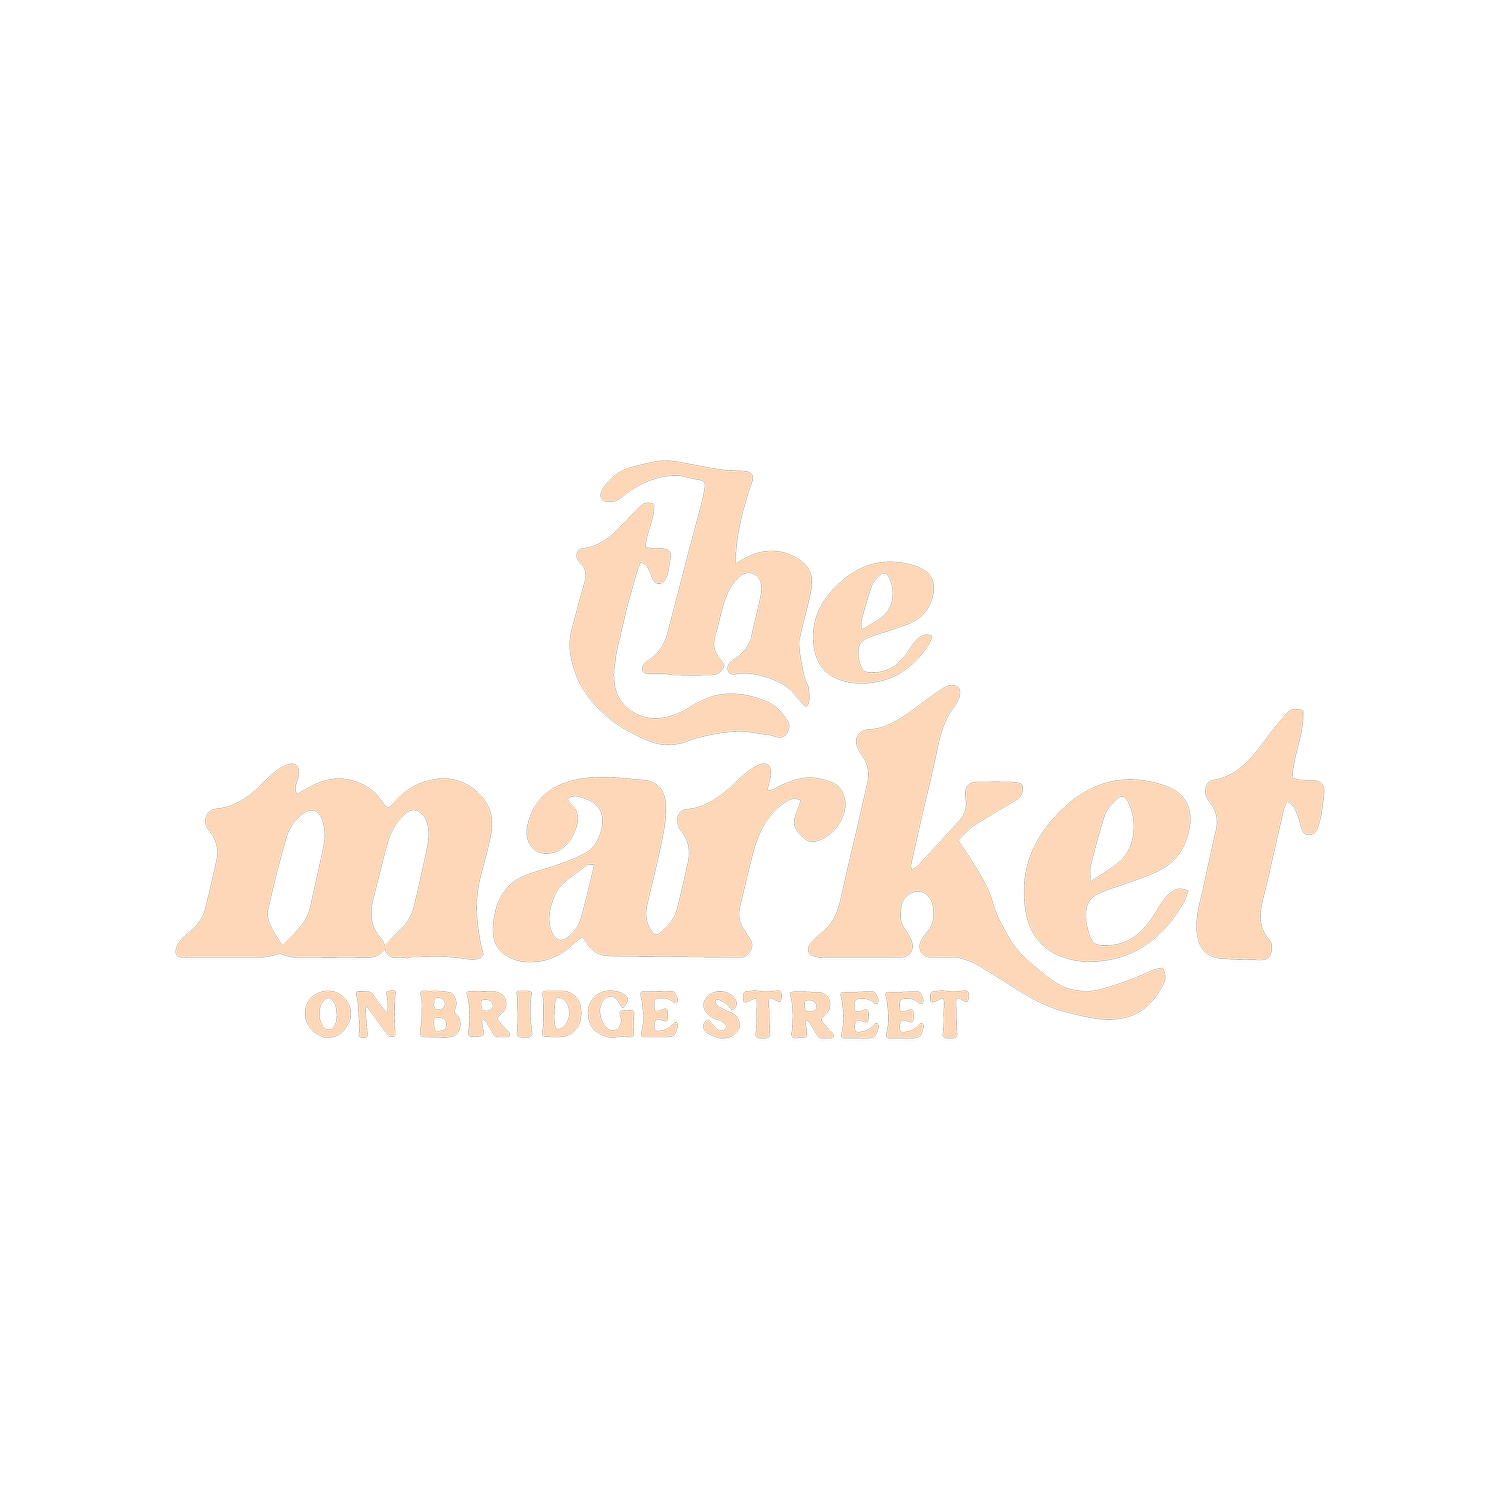 the market on bridge street